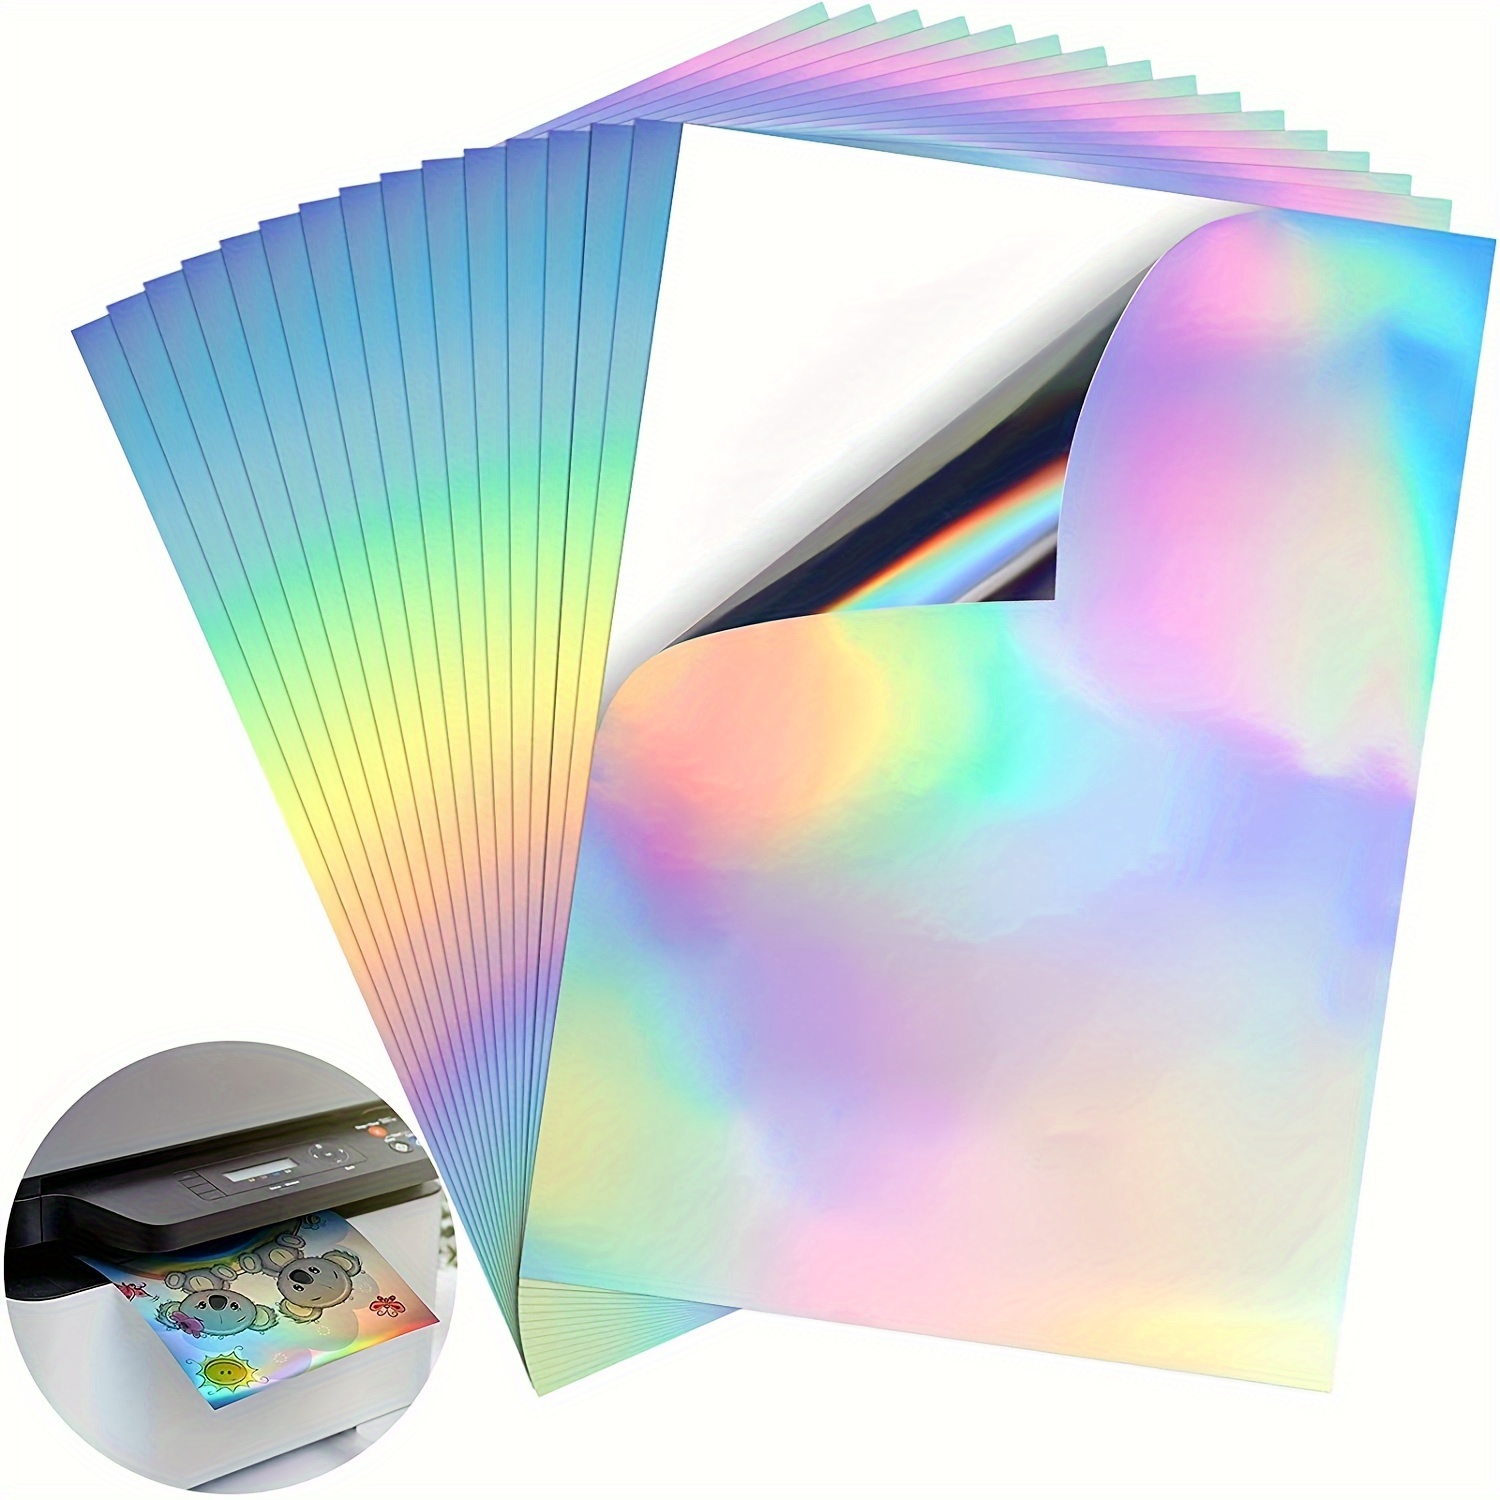 Koala Holographic Vinyl Sticker Paper for Inkjet Printer 20 Sheets